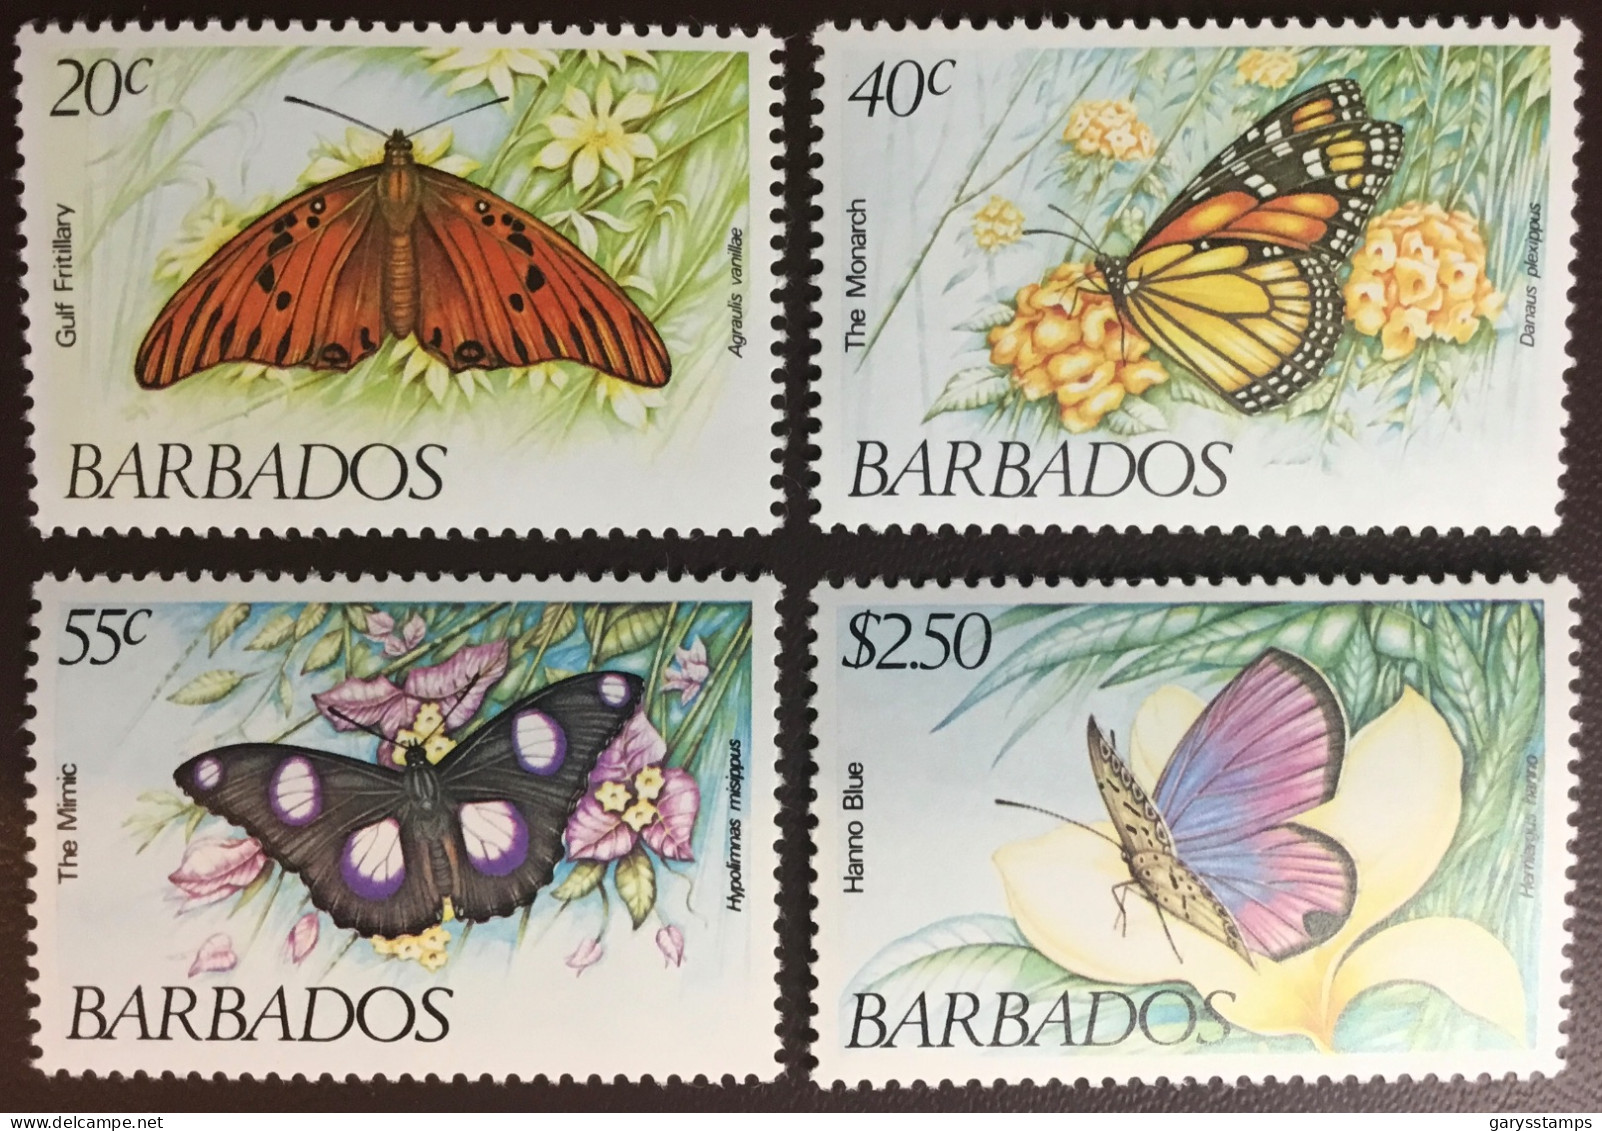 Barbados 1983 Butterflies MNH - Butterflies